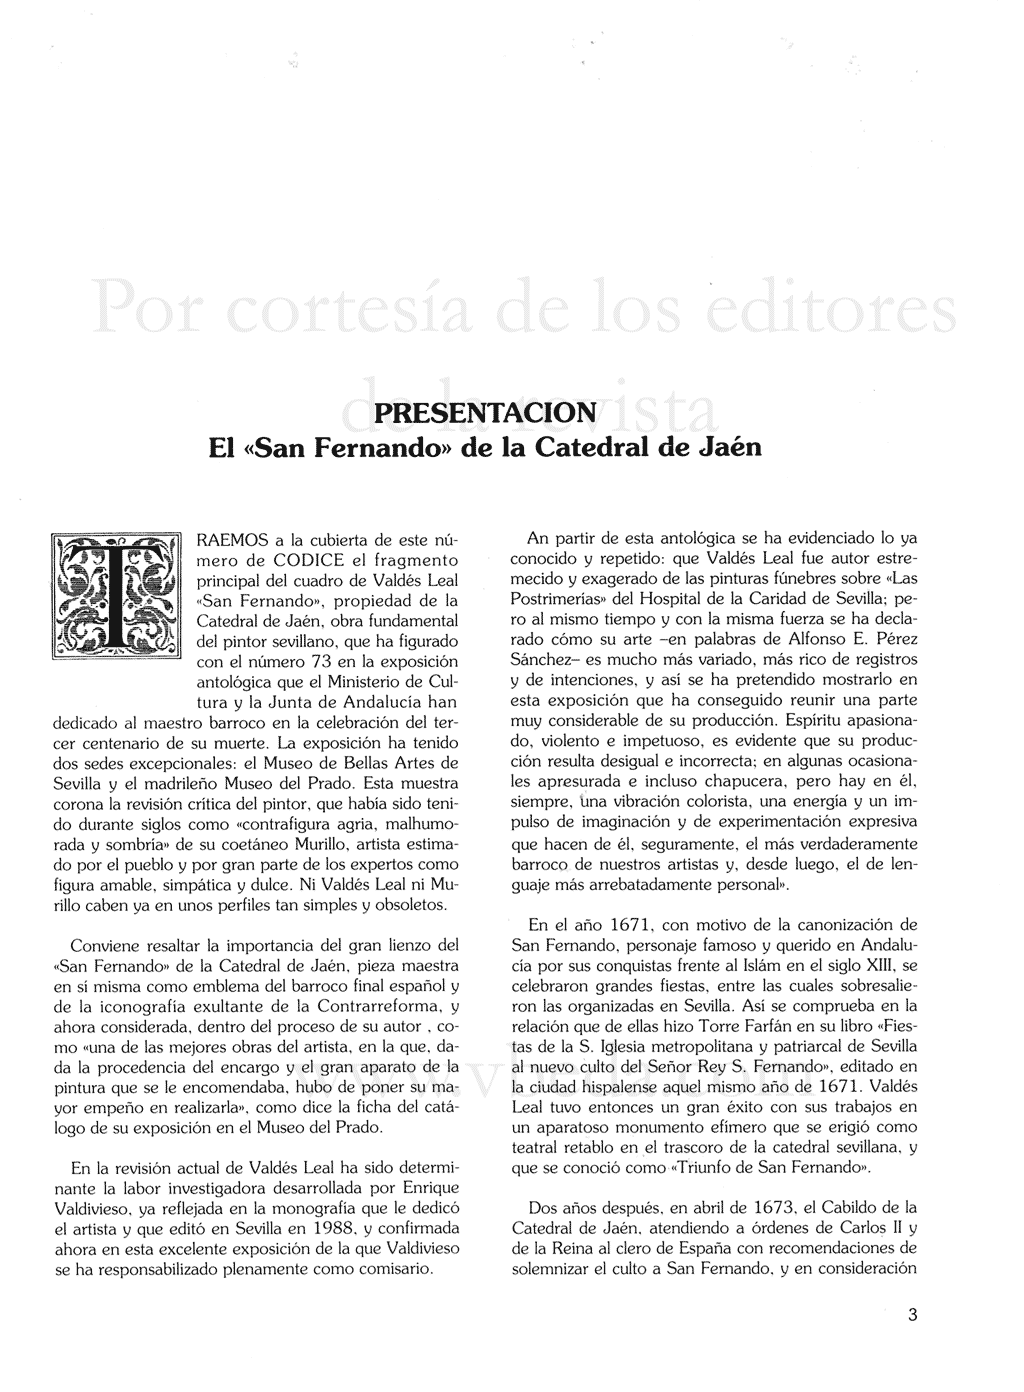 Revista Códice. Año 6. Número 7. Anuario 1991